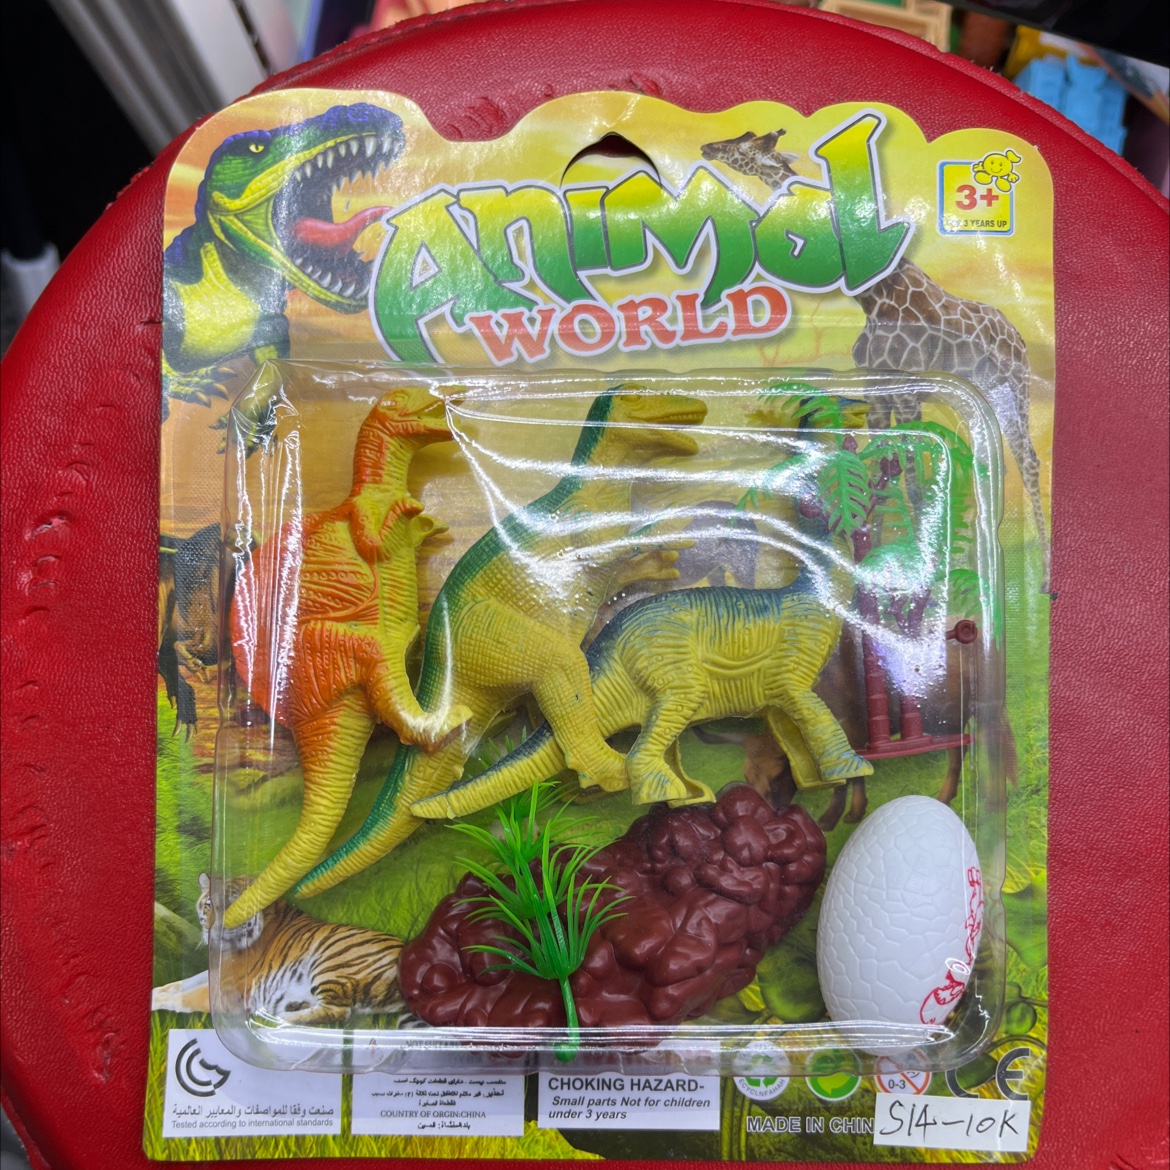 过家家恐龙套装带树带恐龙蛋纸卡玩具